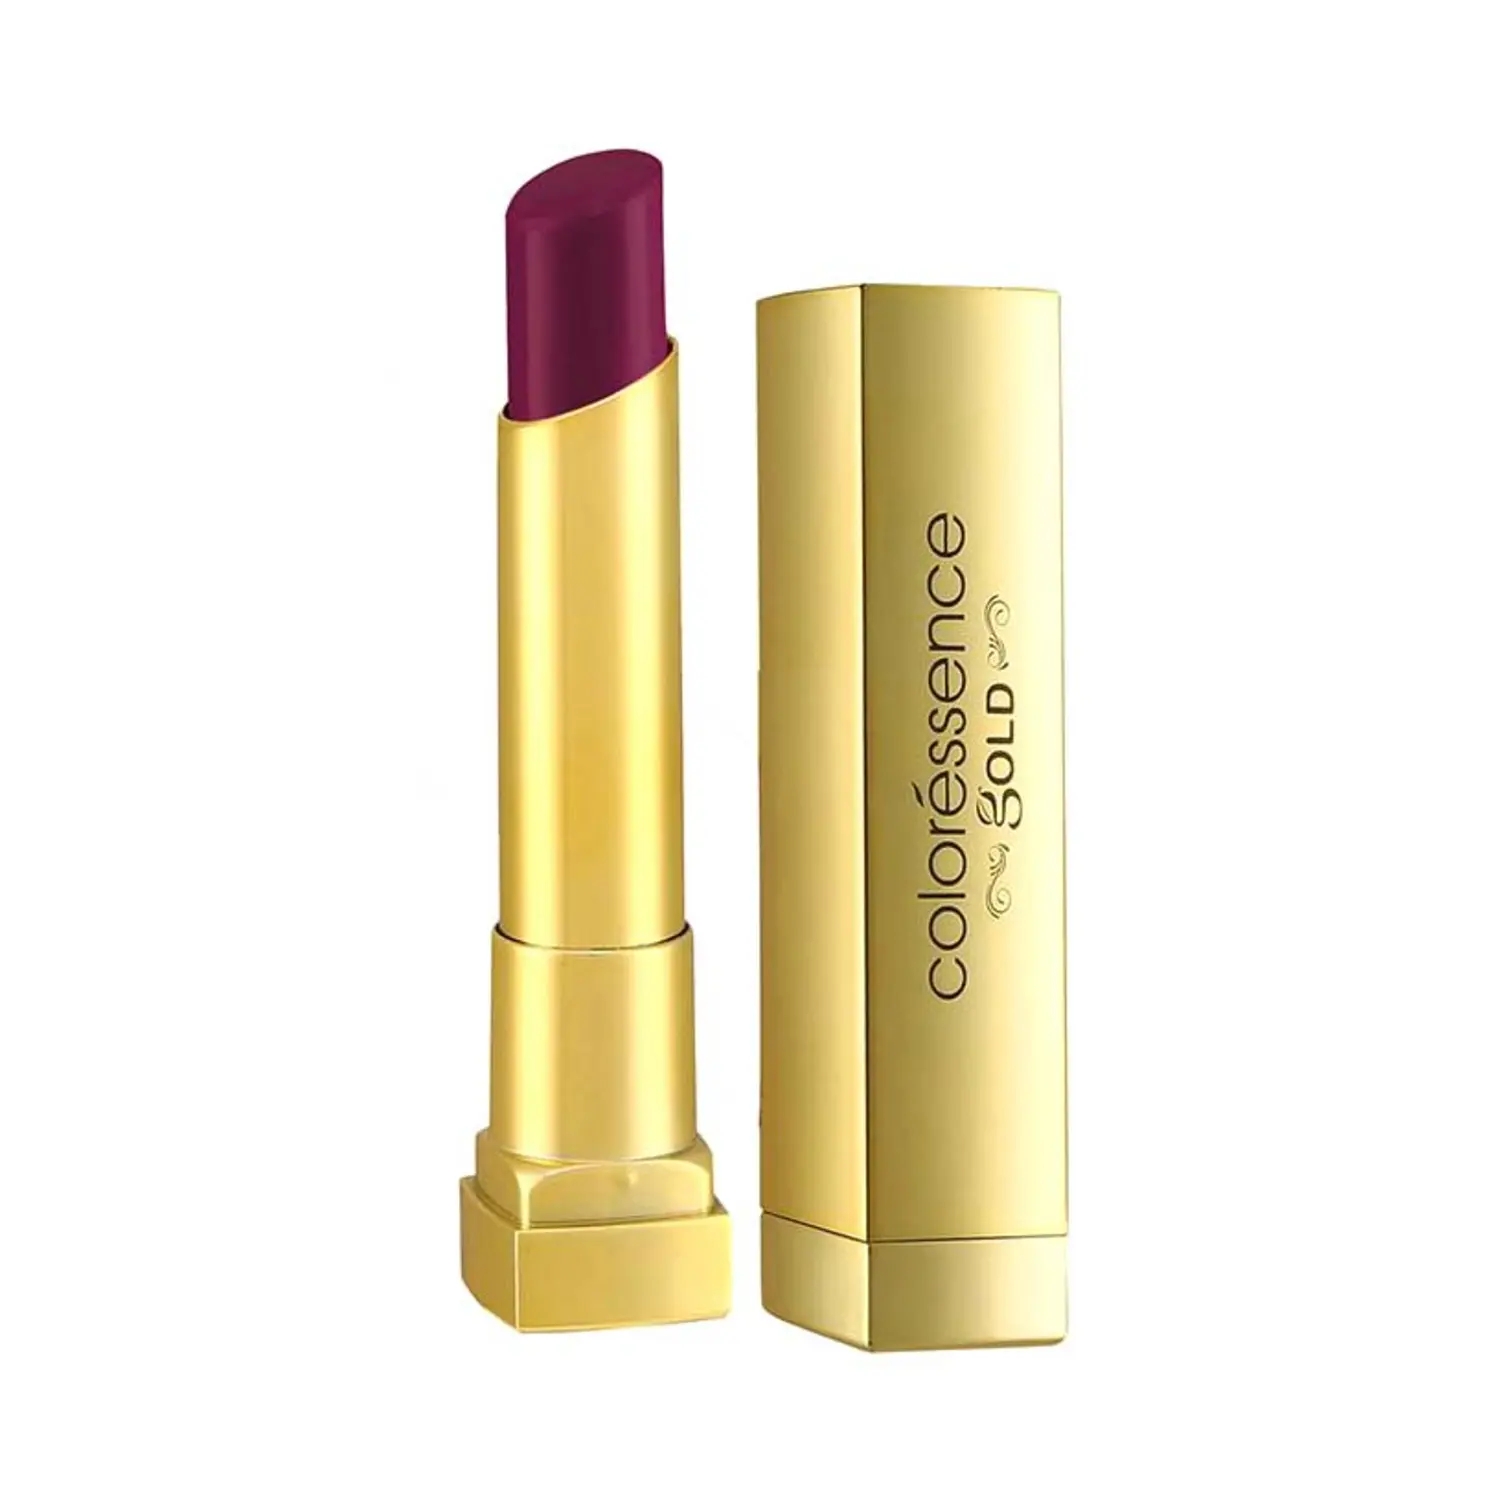 Coloressence | Coloressence Pure Matte Lipstick Velvet Soft Finish Long Long Stay Lip Color - Plum Rose (3.3g)